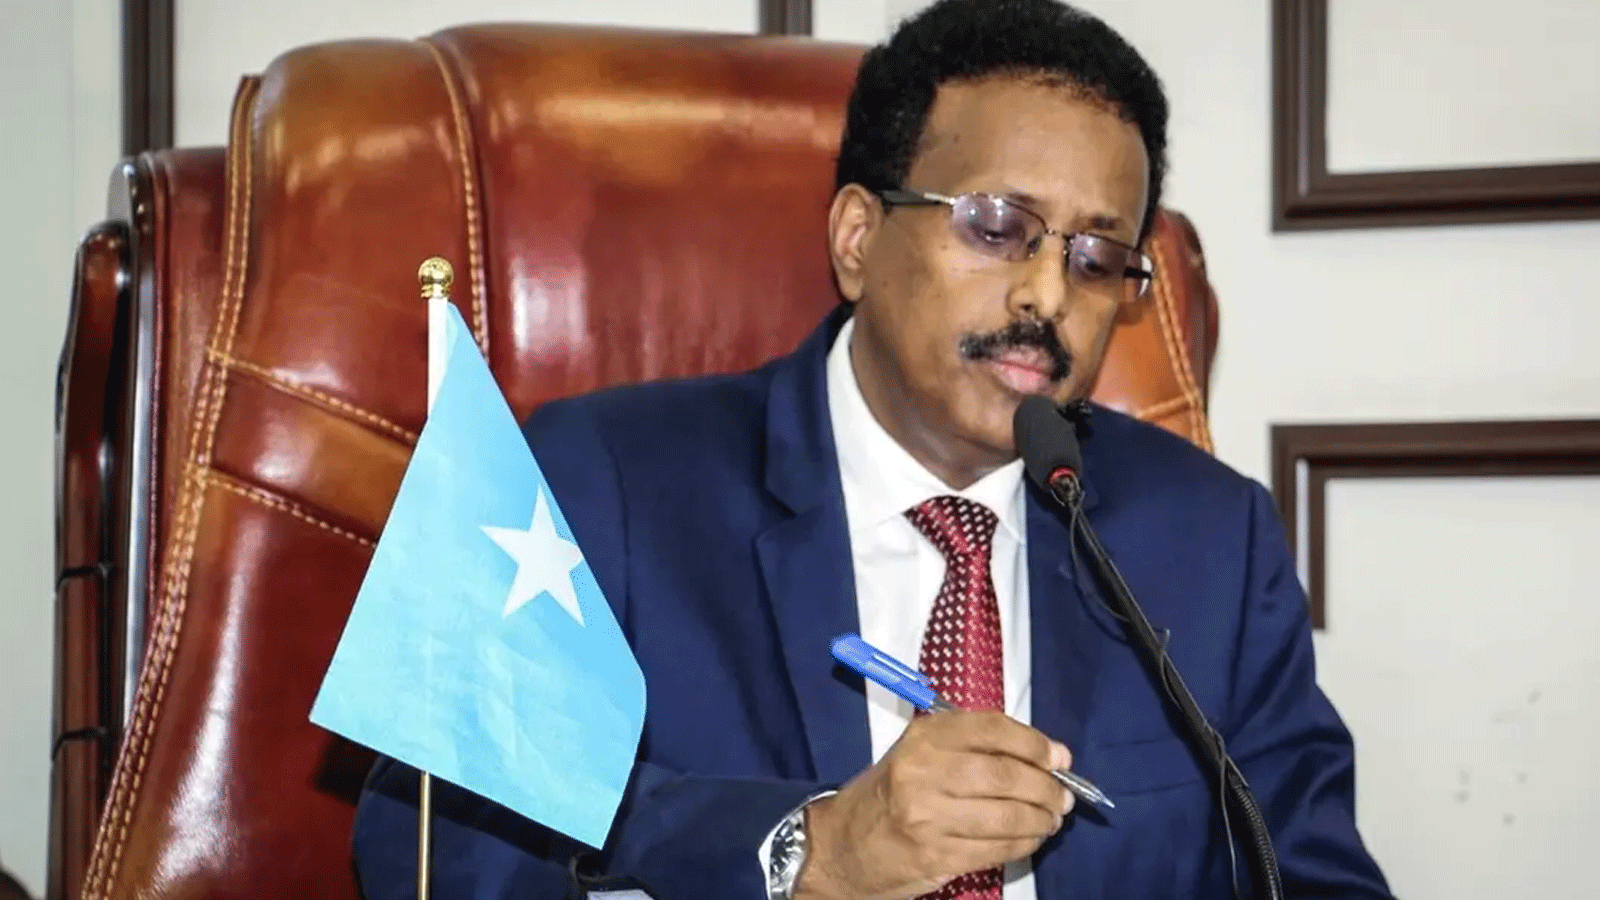 الرئيس الصومالي محمد عبد الله محمد، المعروف باسمه المستعار فارماجو ، يحضر الجمعية الخاصة لتخليه عن تمديد فترة رئاسته لمدة عامين وطلب إجراء انتخابات فورية لتخفيف التوتر السياسي الأخير في فيلا هرجيسا\ مقديشو .1 أيار\مايو 2021